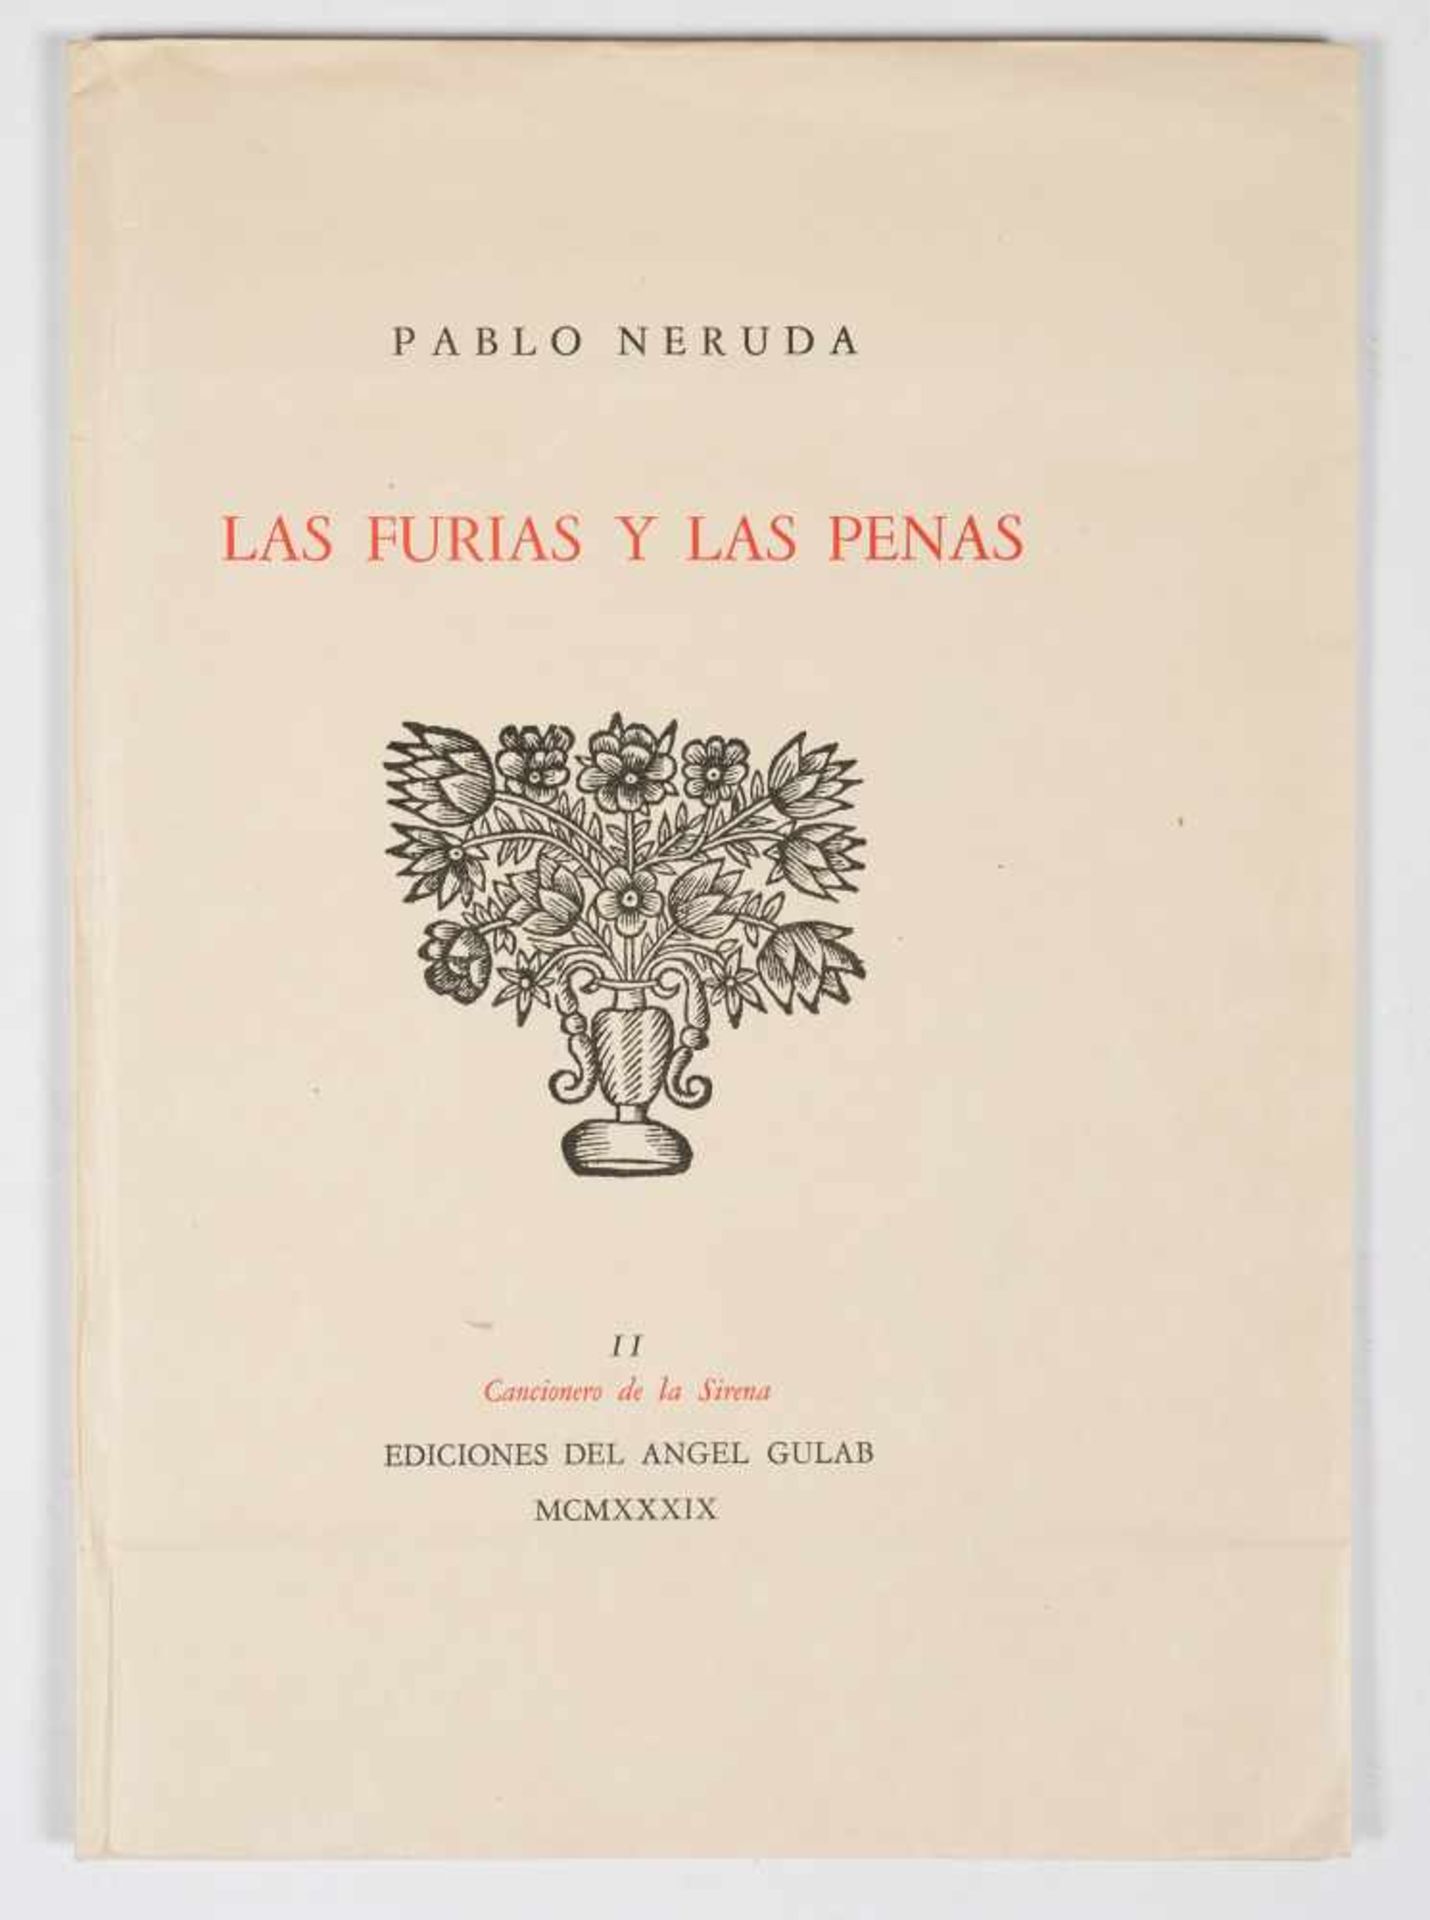 Neruda, Pablo. "Las furias y las penas". 1st edition. Buenos Aires: Published by Ediciones del Ángel